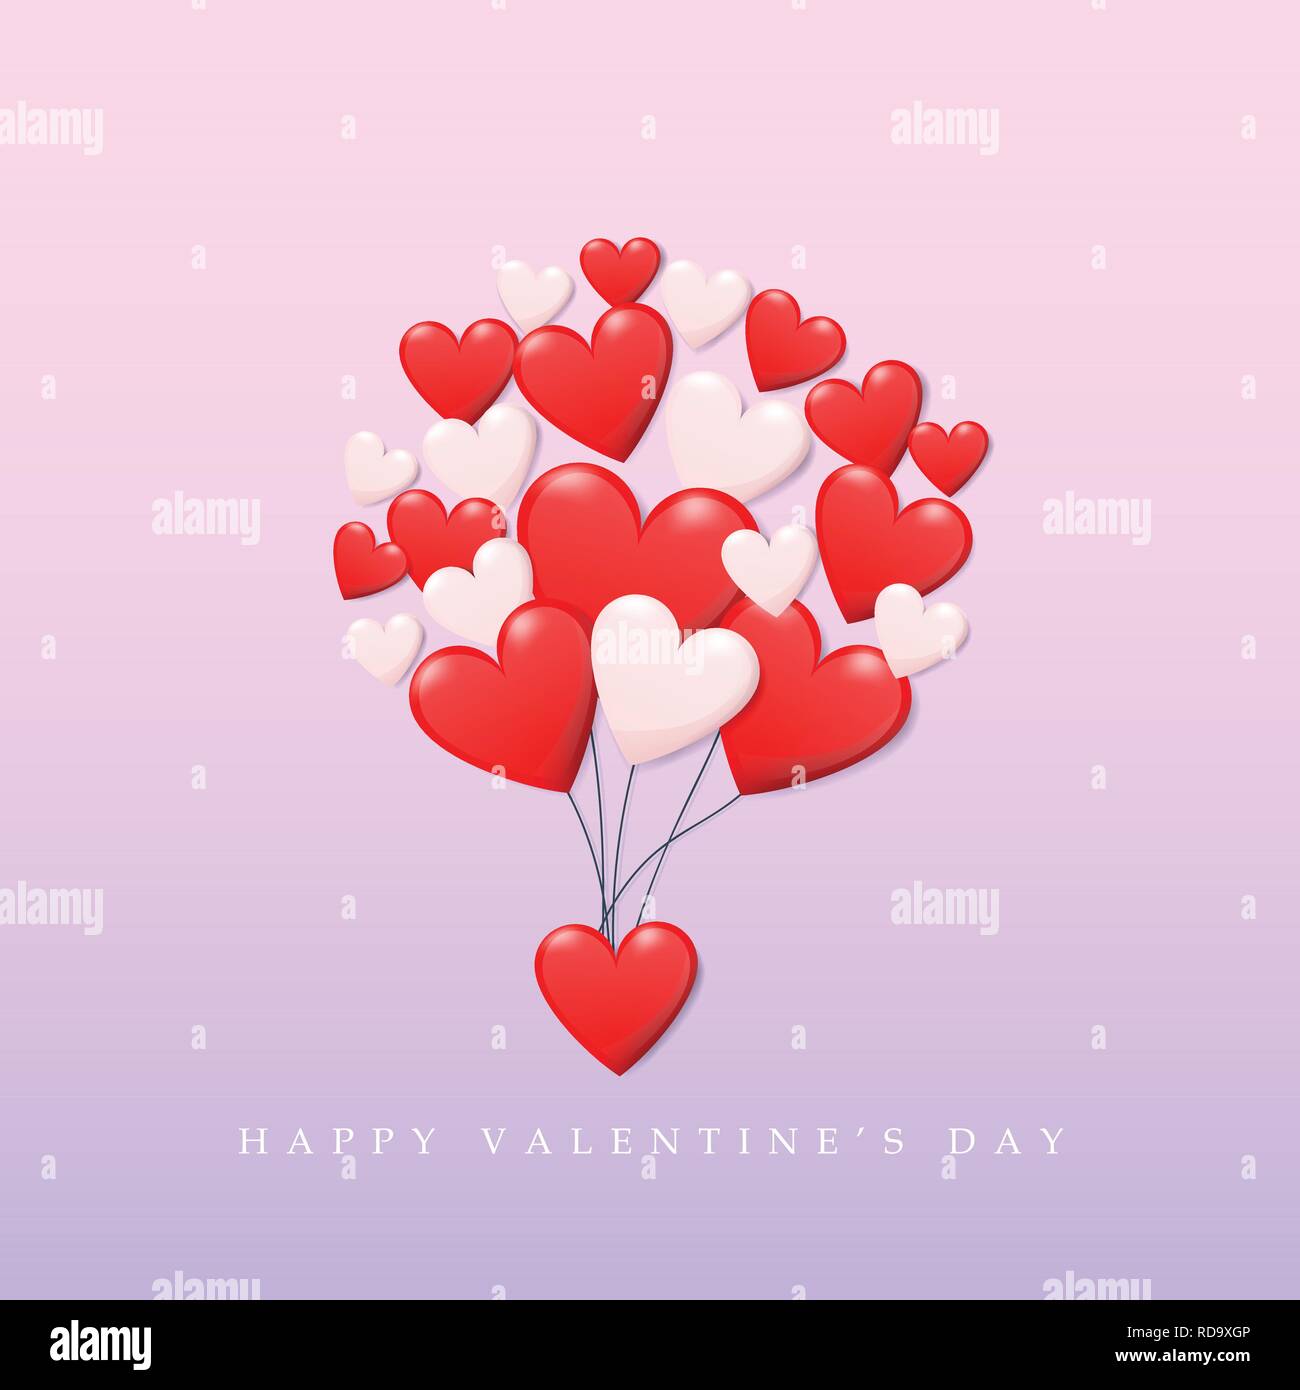 Buon San Valentino concetto. gruppo di cuore in rosso e il colore bianco come fluttuante palloncino fino al cielo con testo happy valentines day. vettore di creative Illustrazione Vettoriale